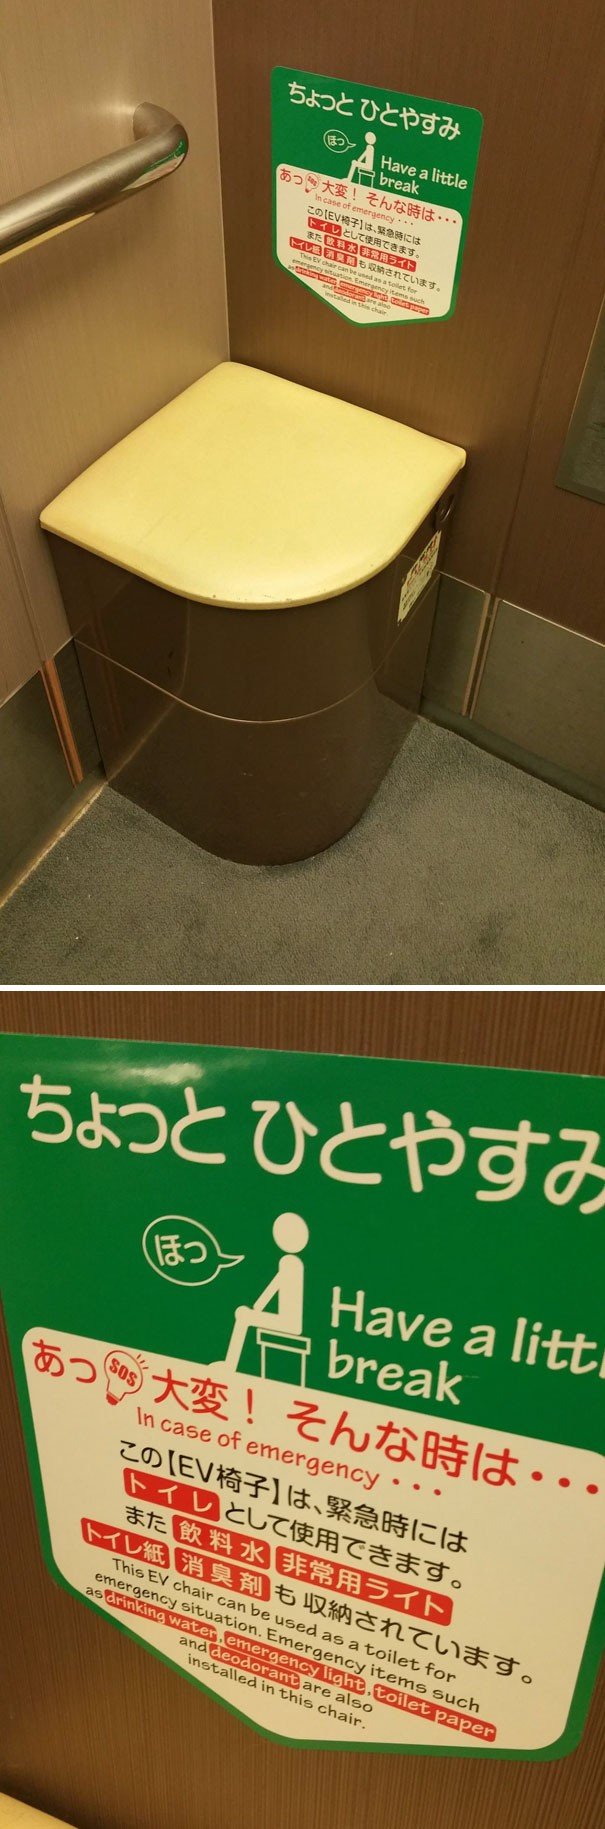 Japonya'daki Bu Asansörde Acil Durumda Tuvalet Olarak Kullanılabilecek Bir Koltuk Var